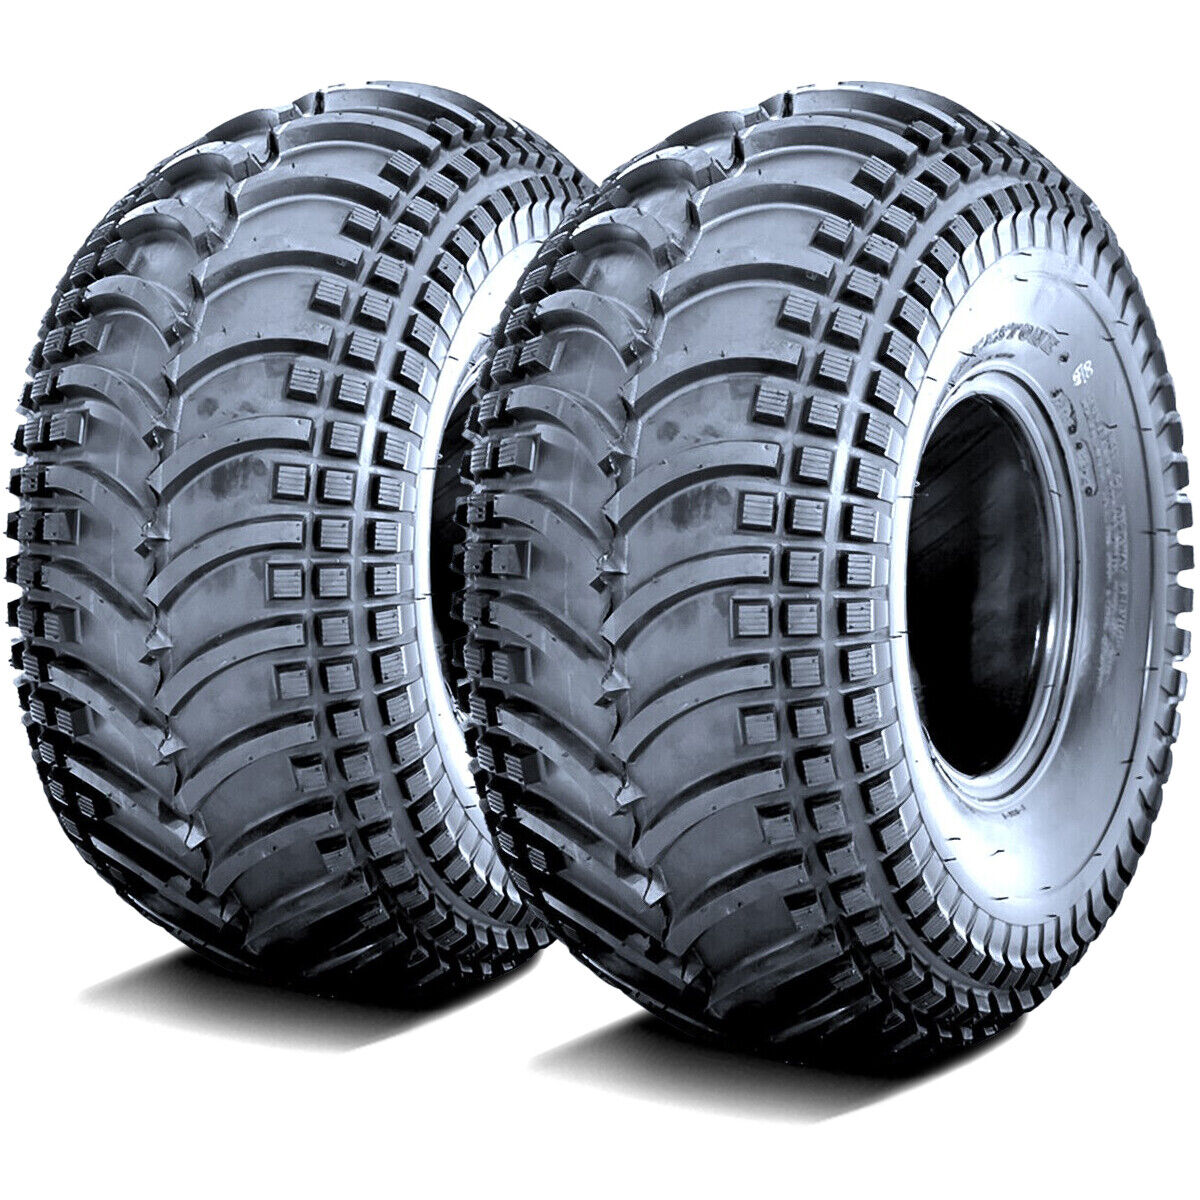 2 Tires Deestone D930 22x11.00-9 22x11-9 22x11x9 43F 4 Ply MT M/T Mud ATV UTV